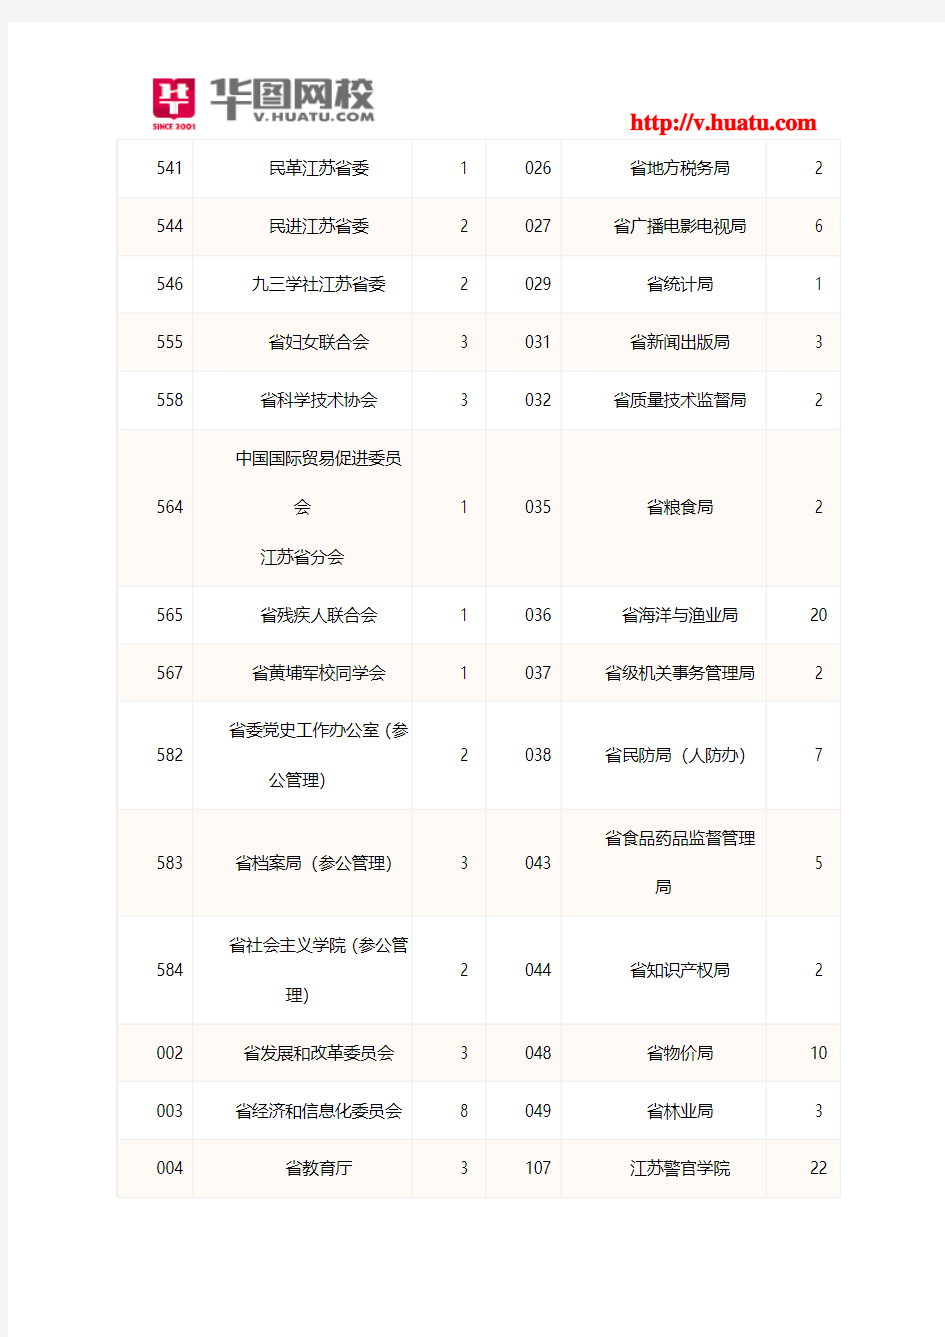 2014年江苏省公务员考试职位表